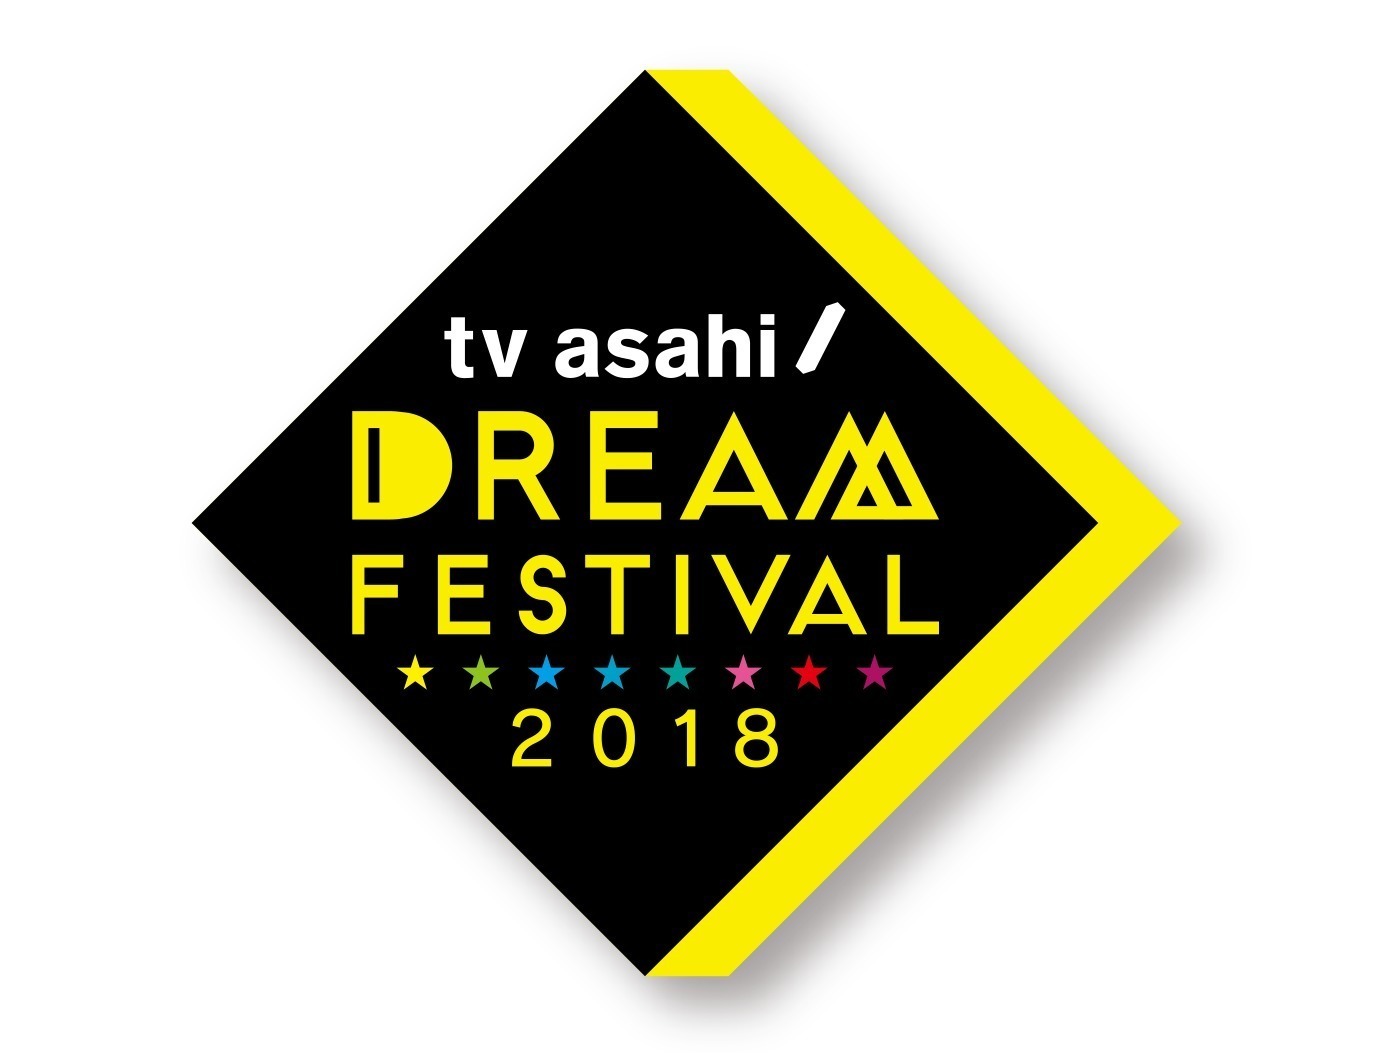 テレビ朝日ドリームフェスティバル 2018